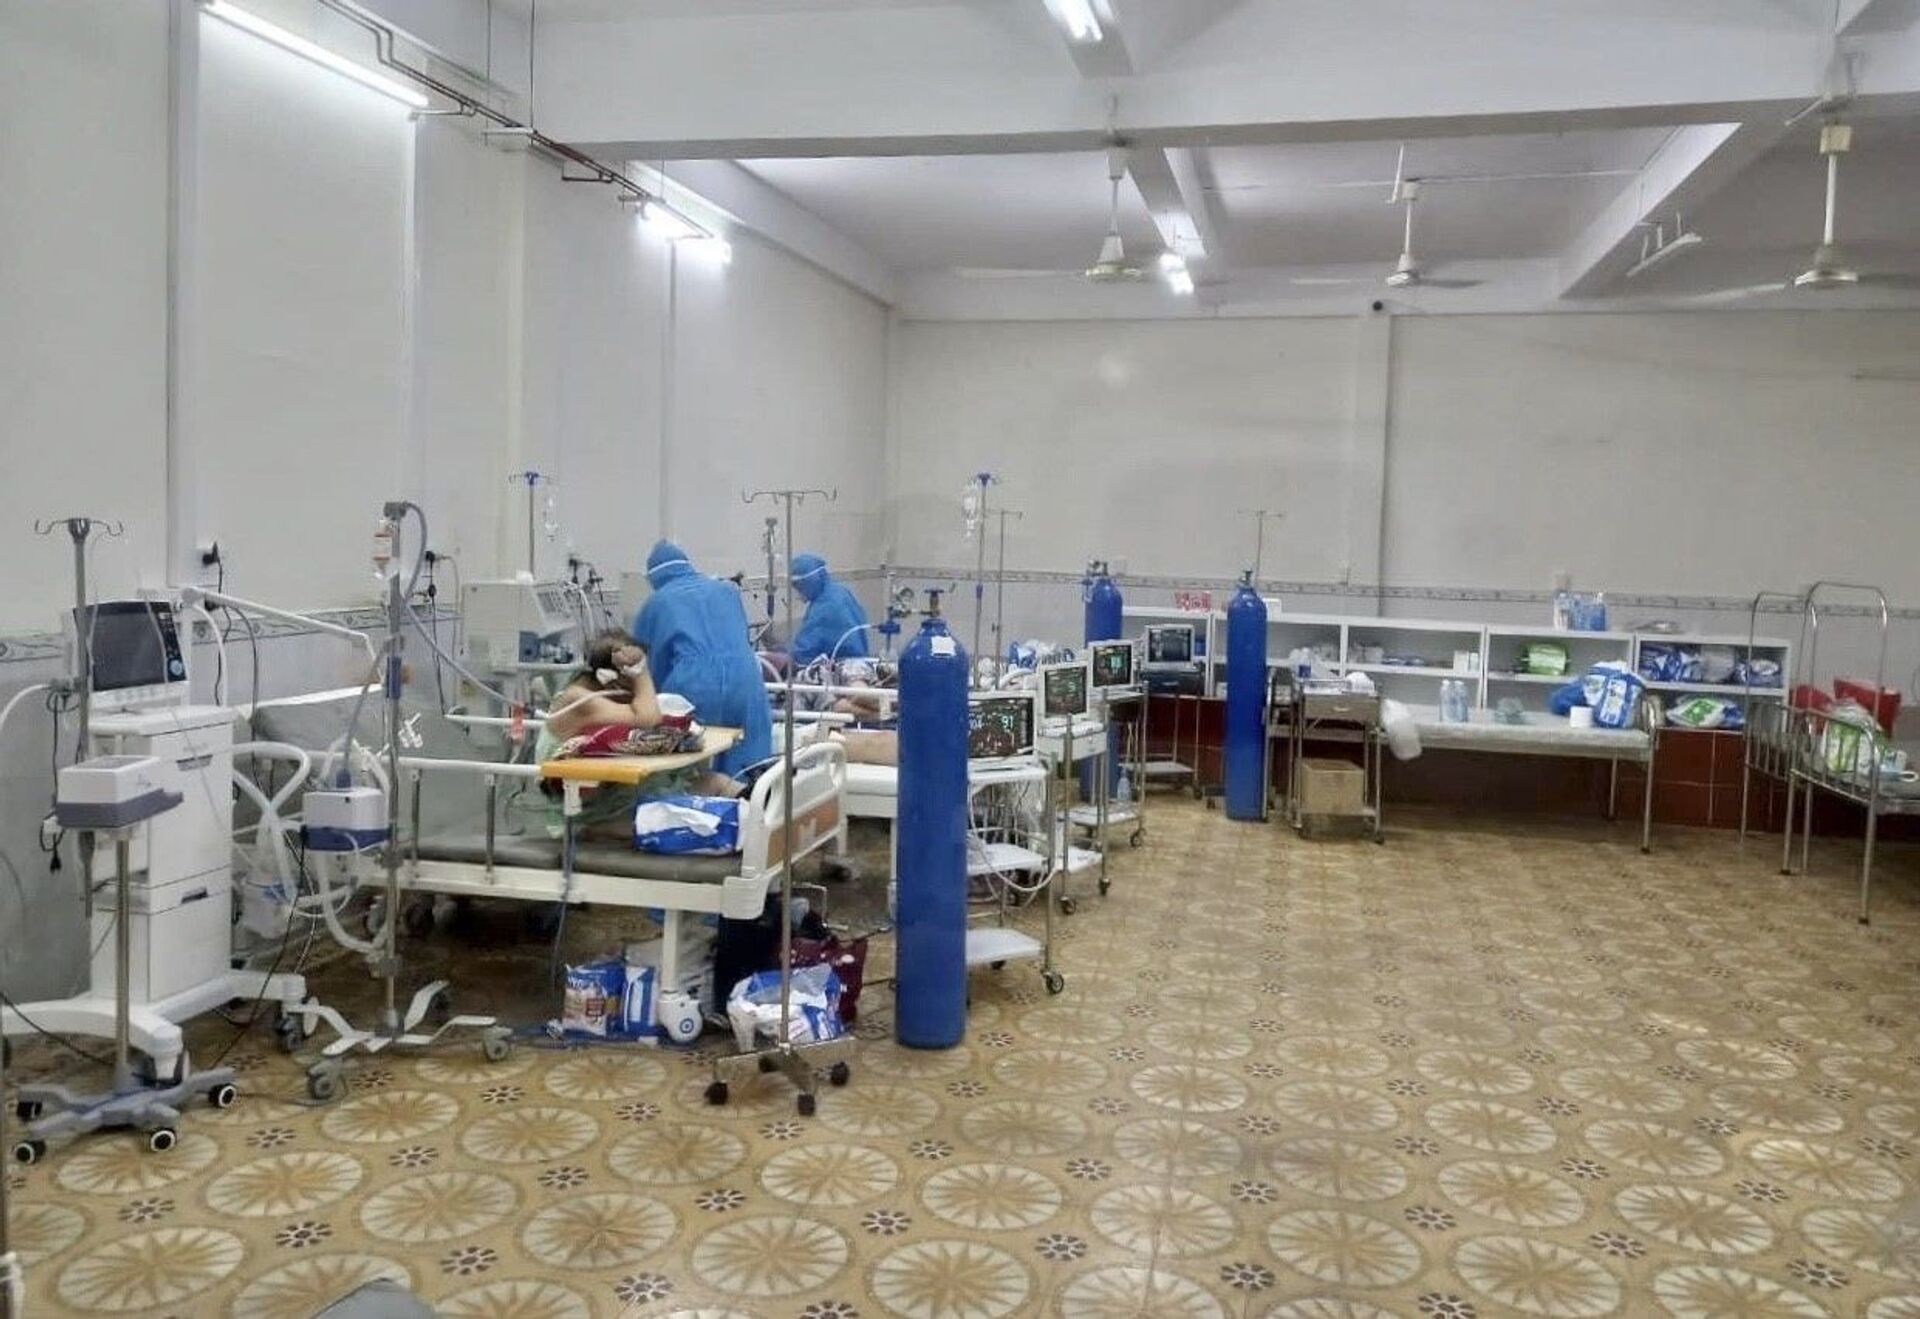 Tại bệnh viện Tân Phú, số lượng bệnh nhân đang điều trị là 220 người. Trong số đó có 151 bệnh nhân nặng cần thở oxy, số còn lại là người có triệu chứng, nhiều bệnh nền cần phải điều trị - Sputnik Việt Nam, 1920, 05.10.2021